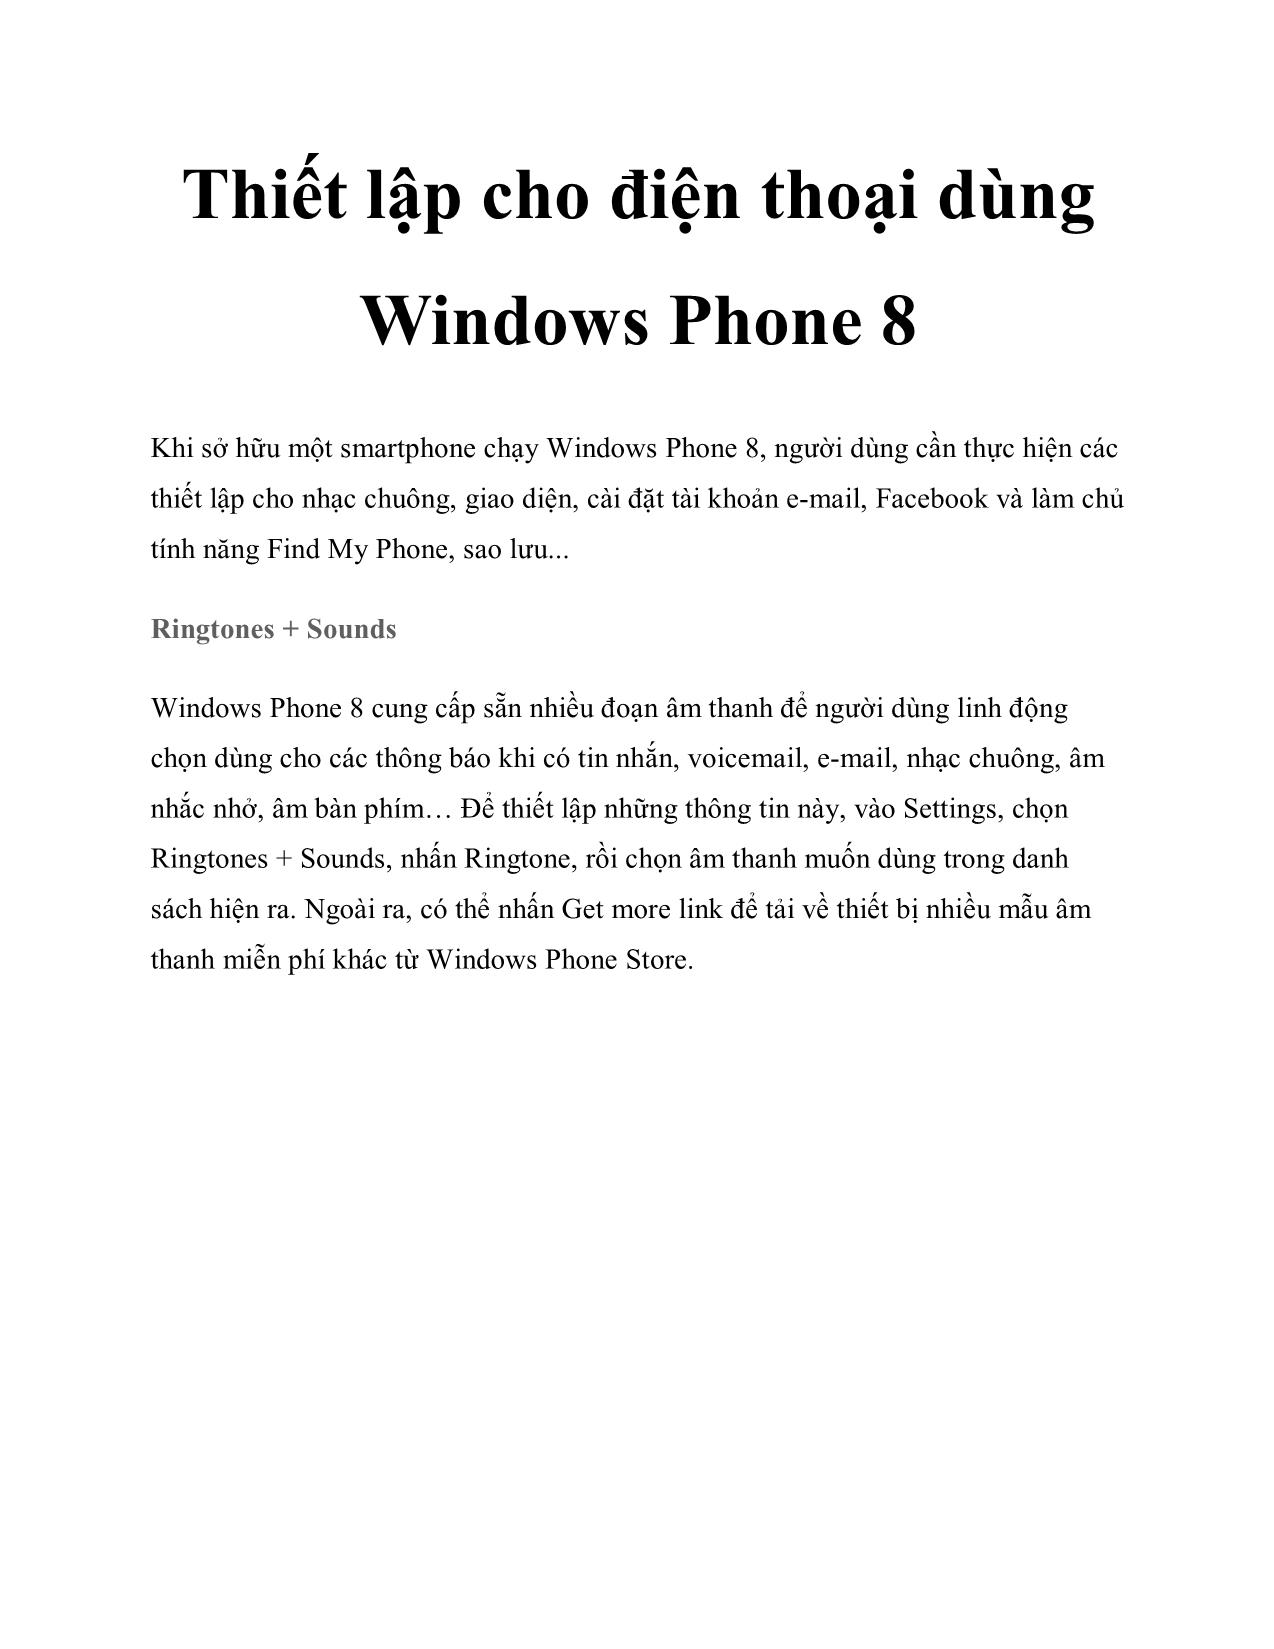 Thiết lập cho điện thoại dùng Windows Phone 8 trang 1